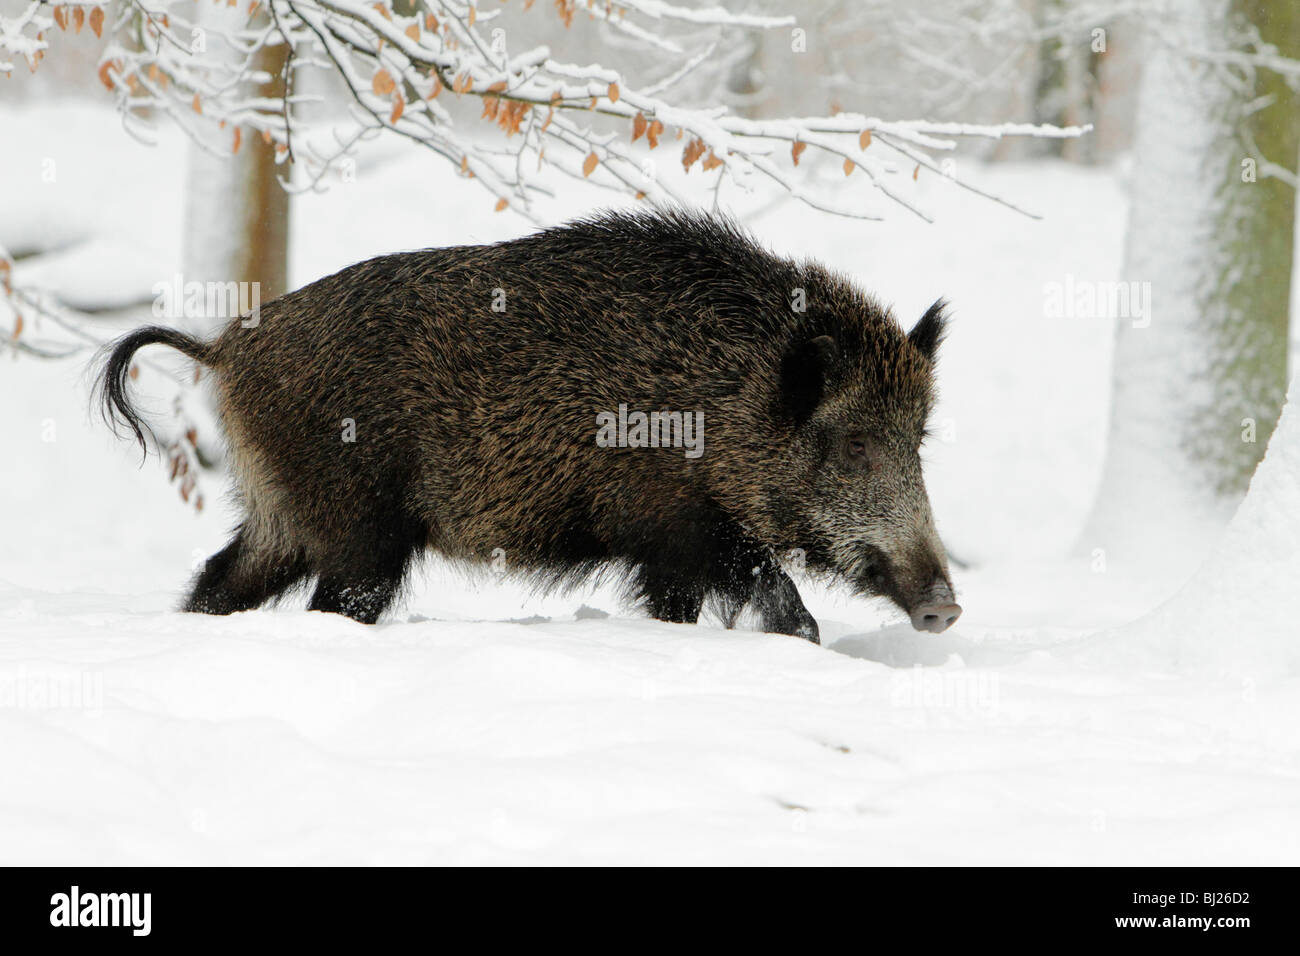 Sanglier, Sus Scrofa, sow marche à travers la forêt couverte de neige, Allemagne Banque D'Images